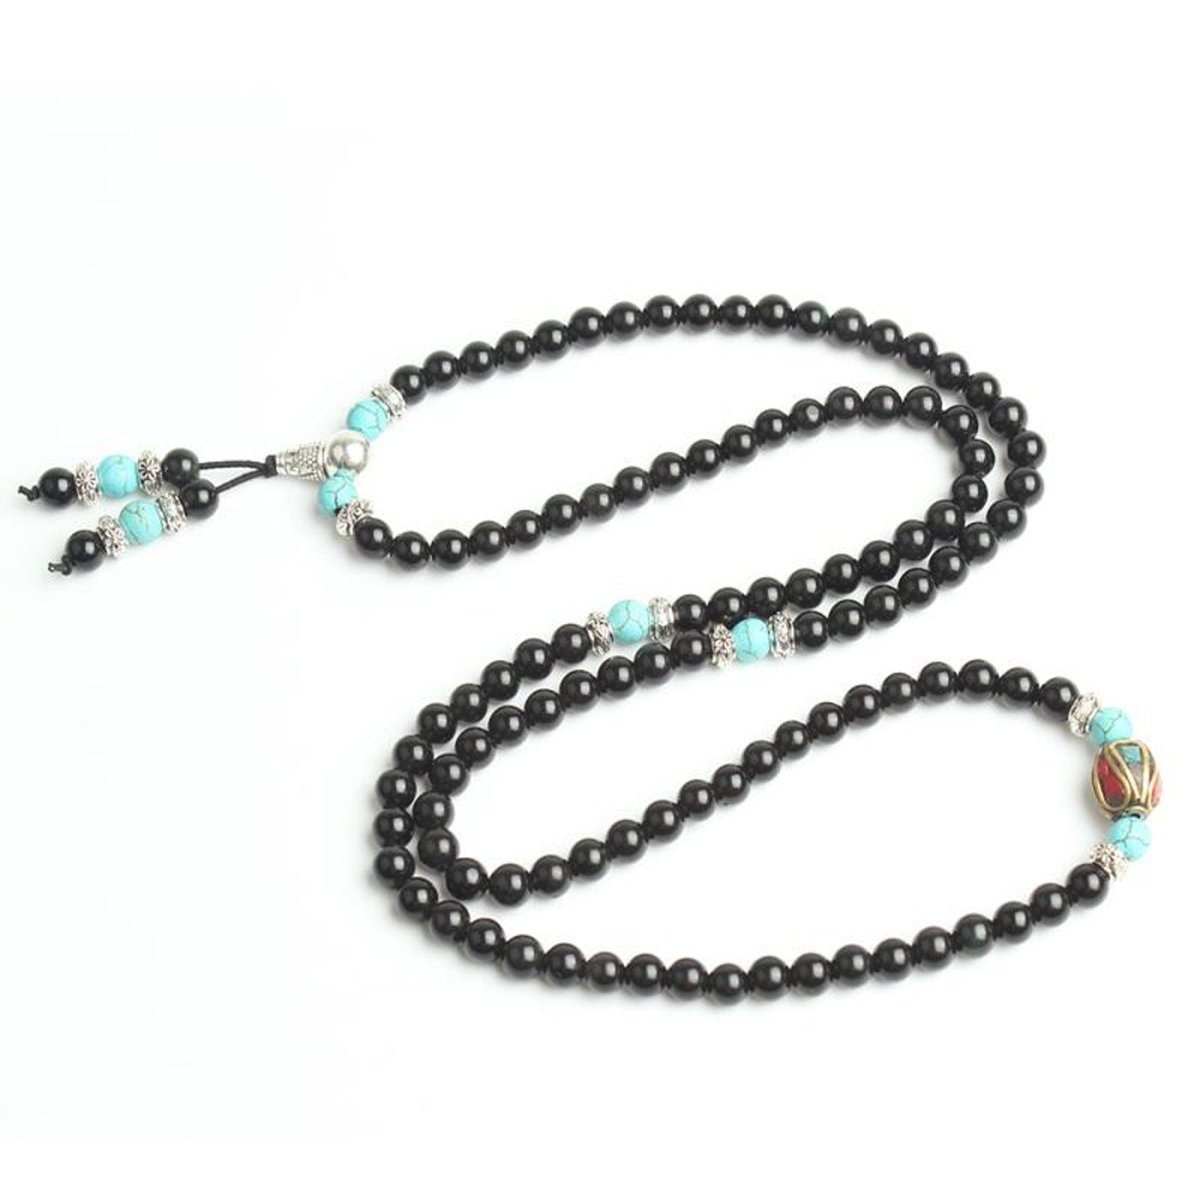 Turquoise & Obsidian Mala Bracelet/Necklace - Mala Bracelet